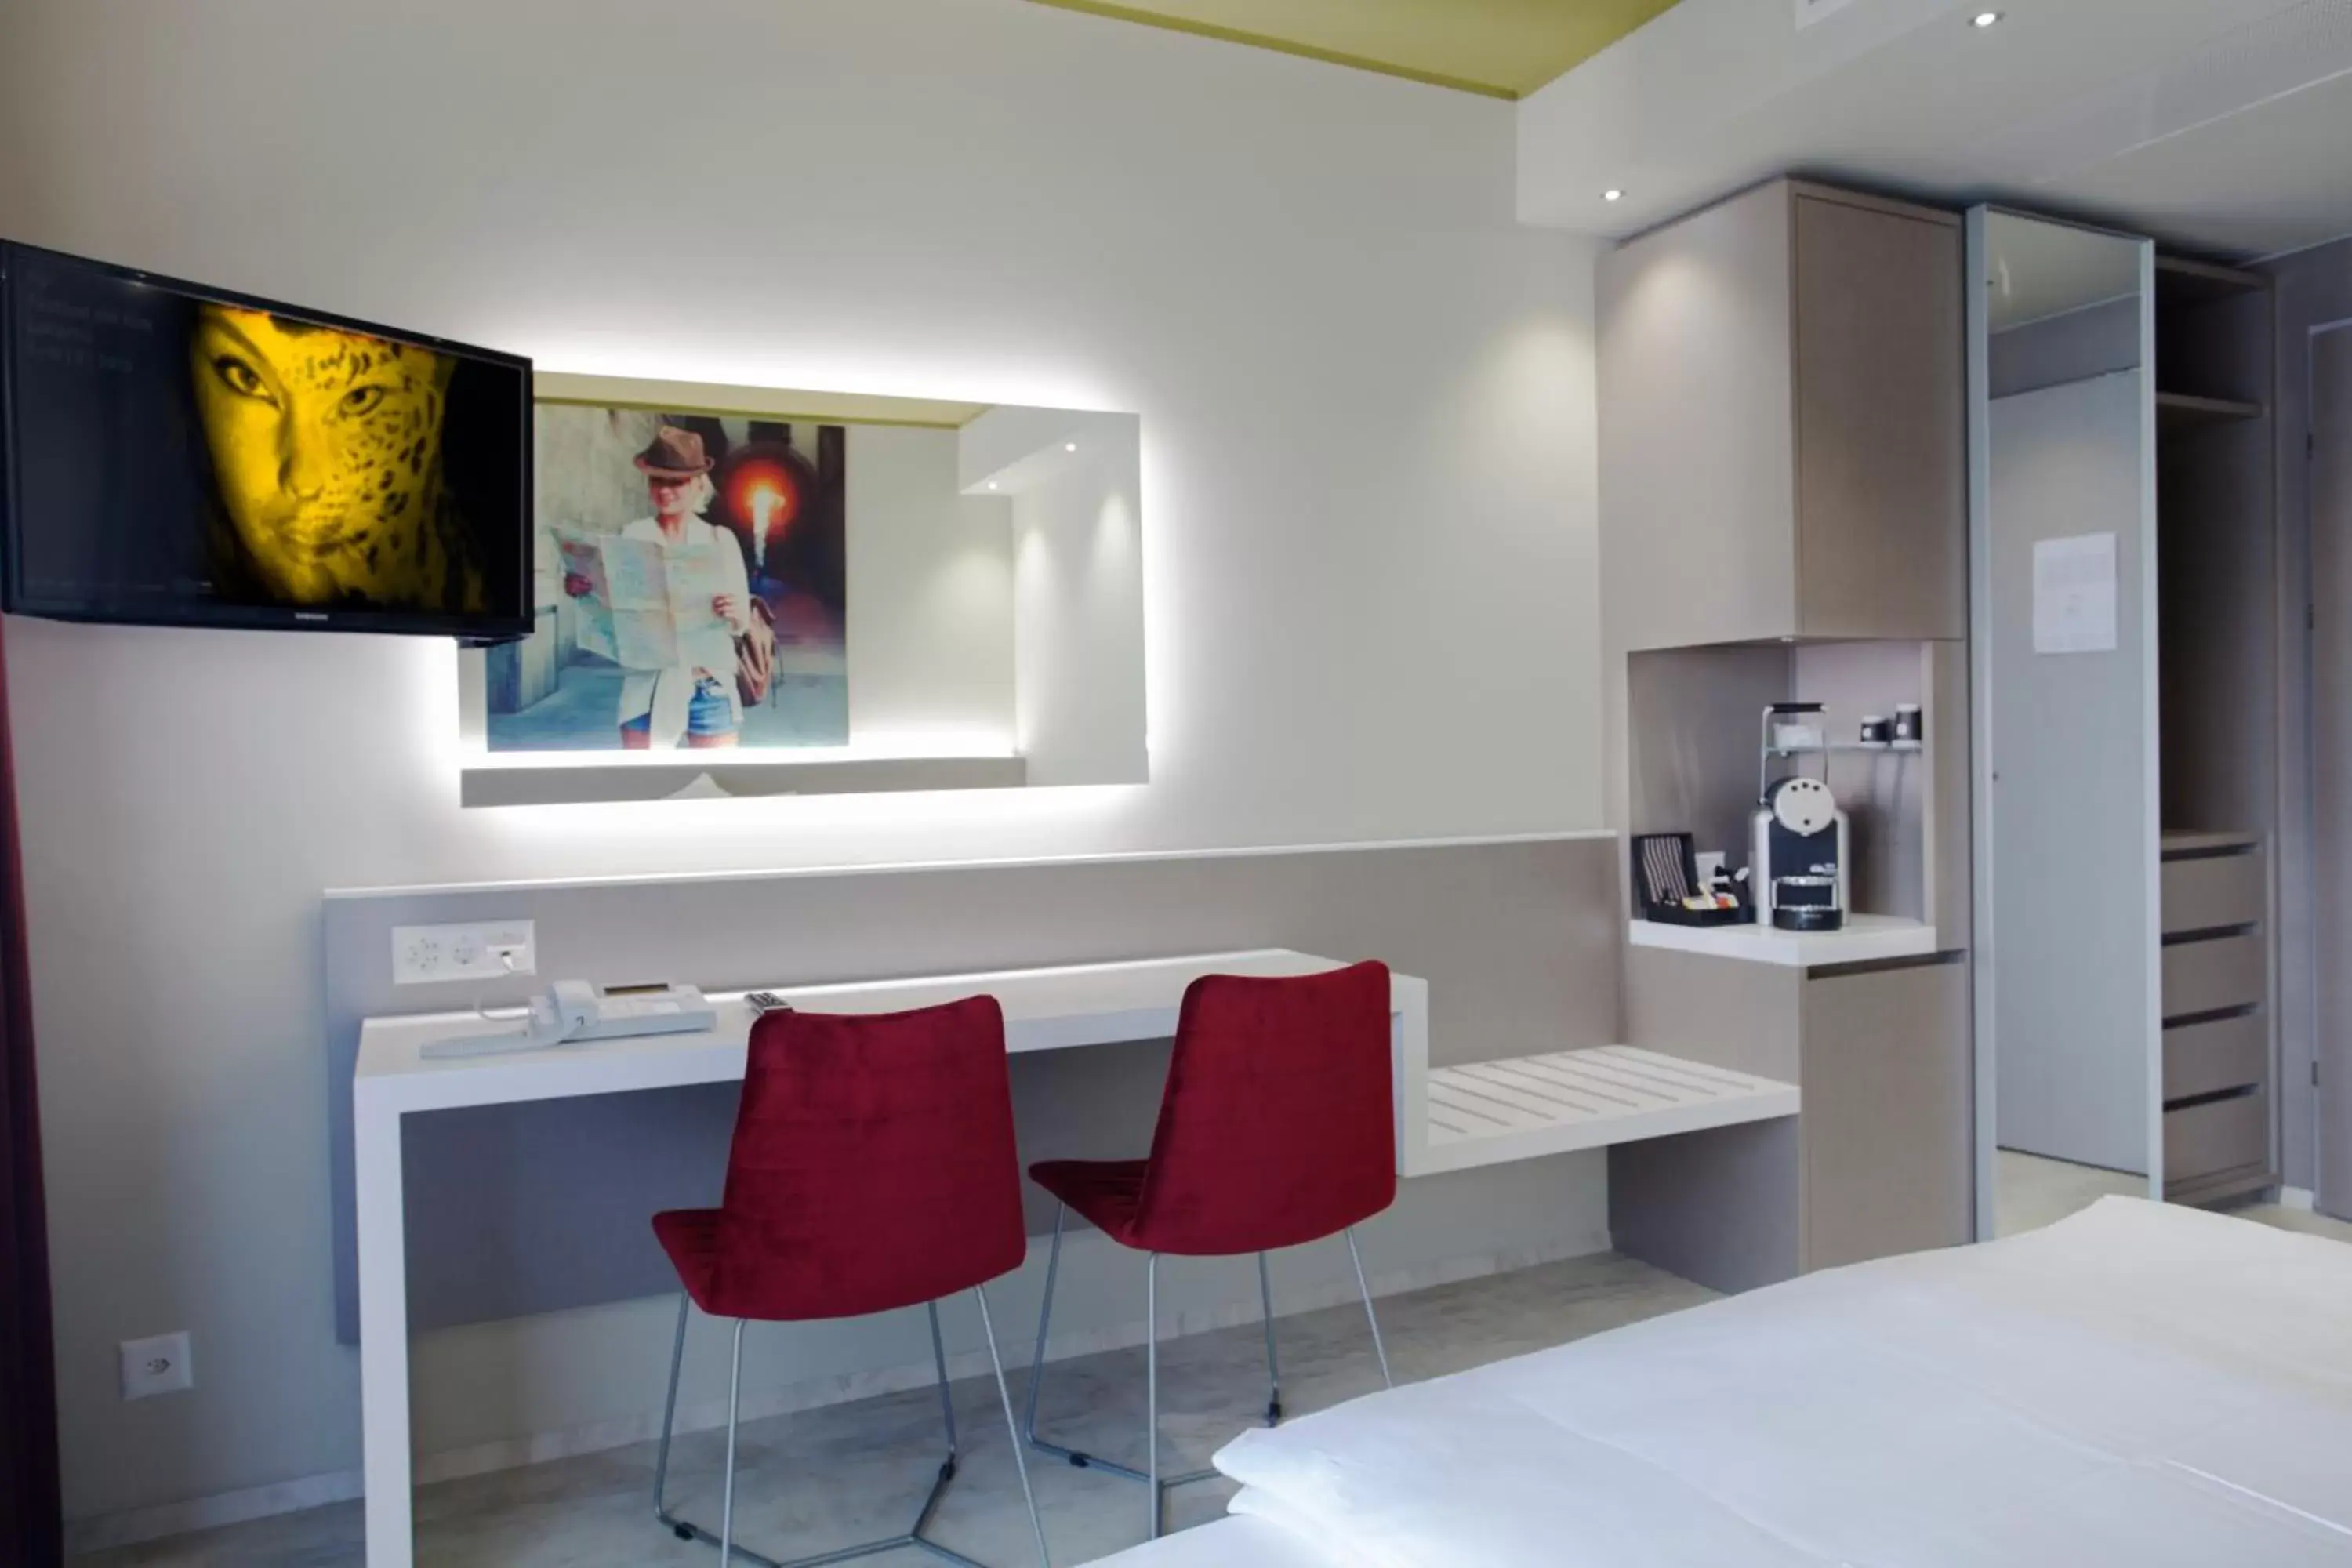 Area and facilities in Hotel City Locarno